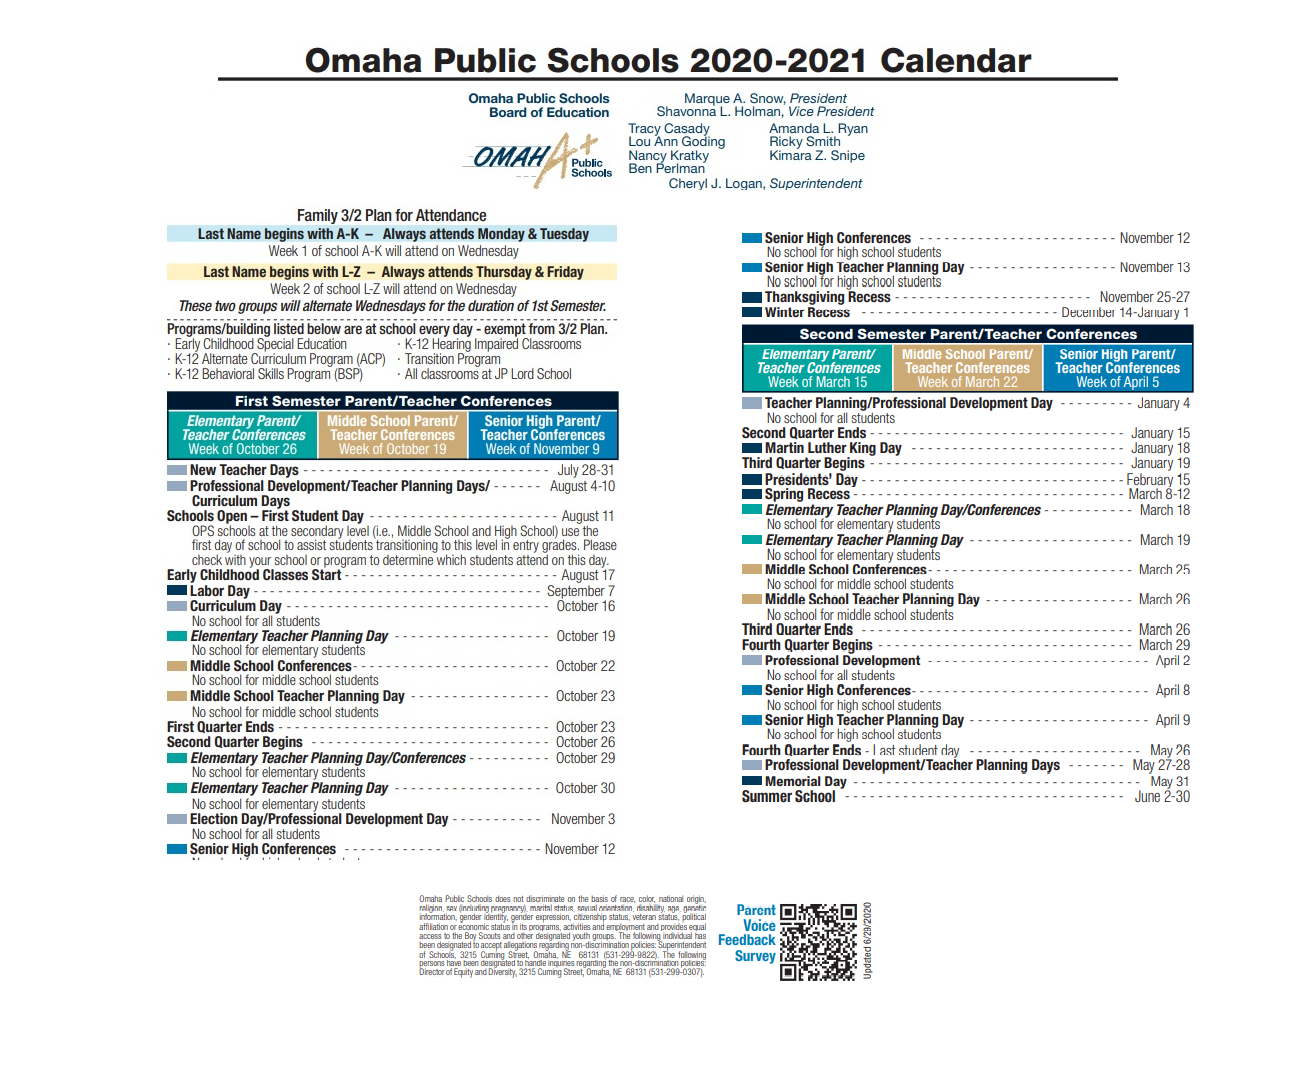 District School Academic Calendar Key for Skinner Magnet Center